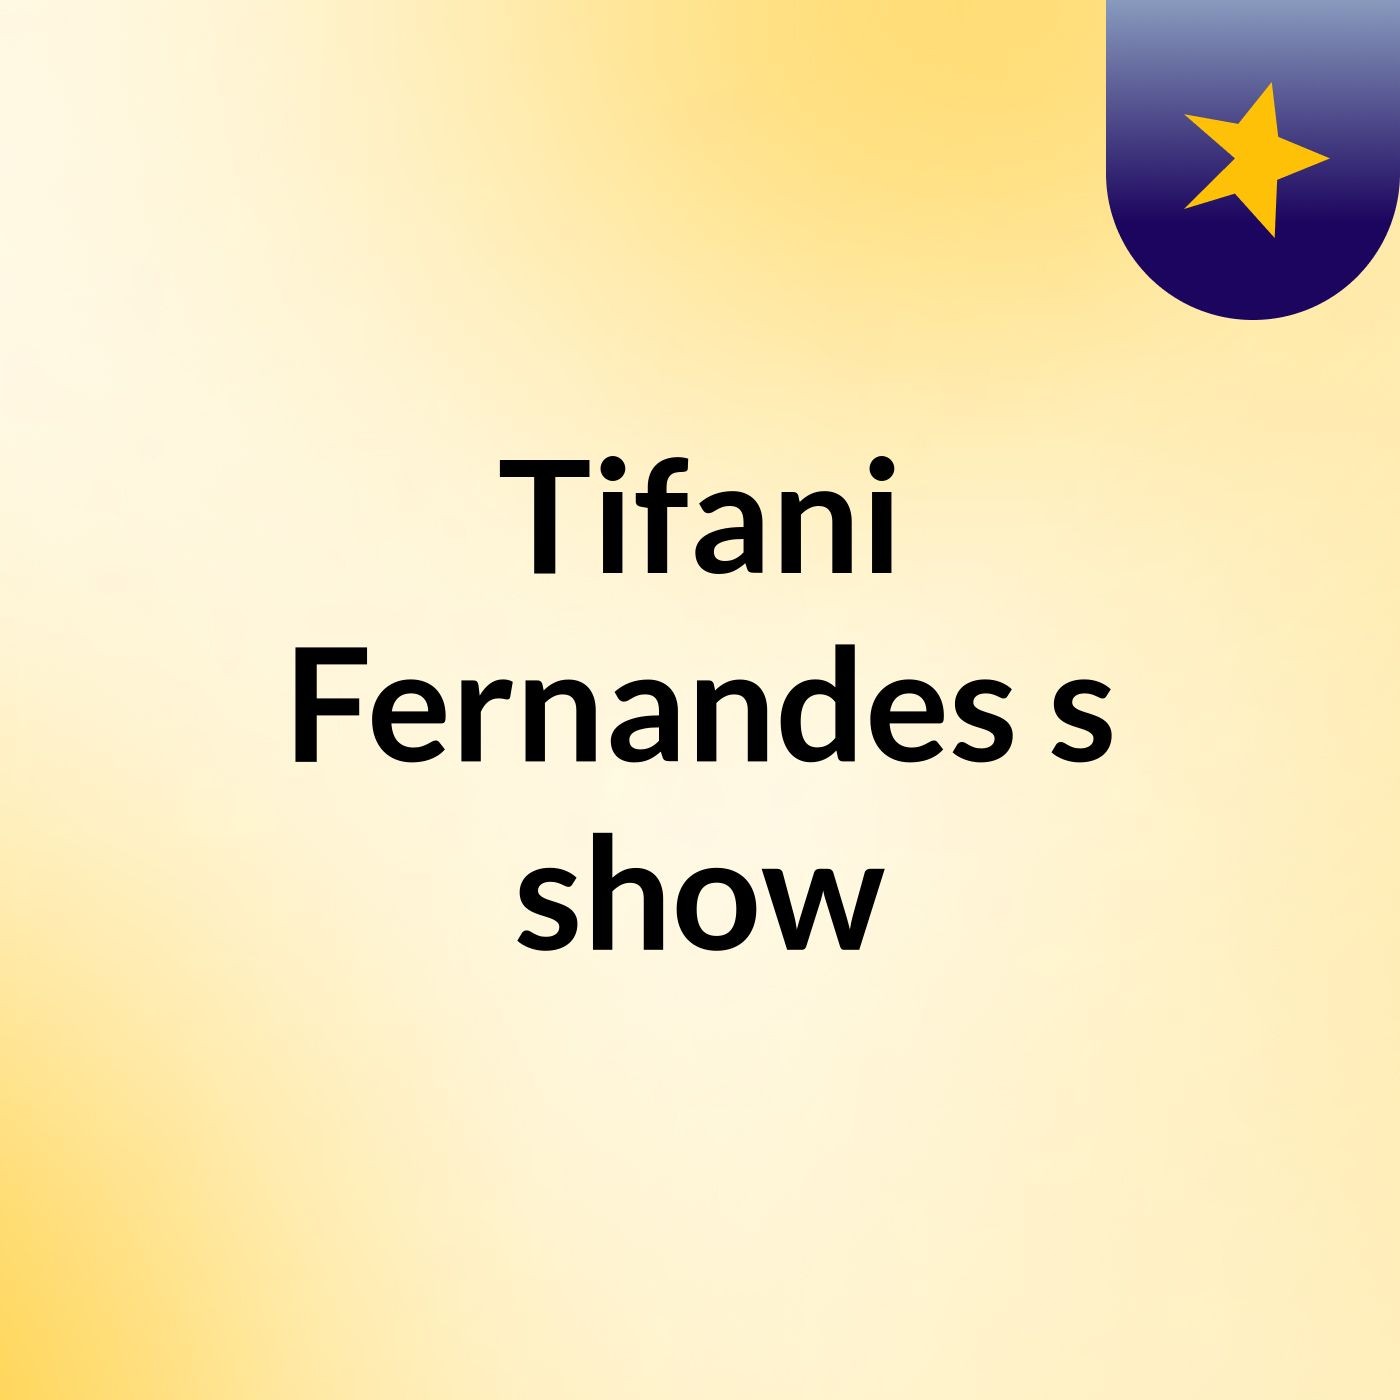 Tifani Fernandes's show